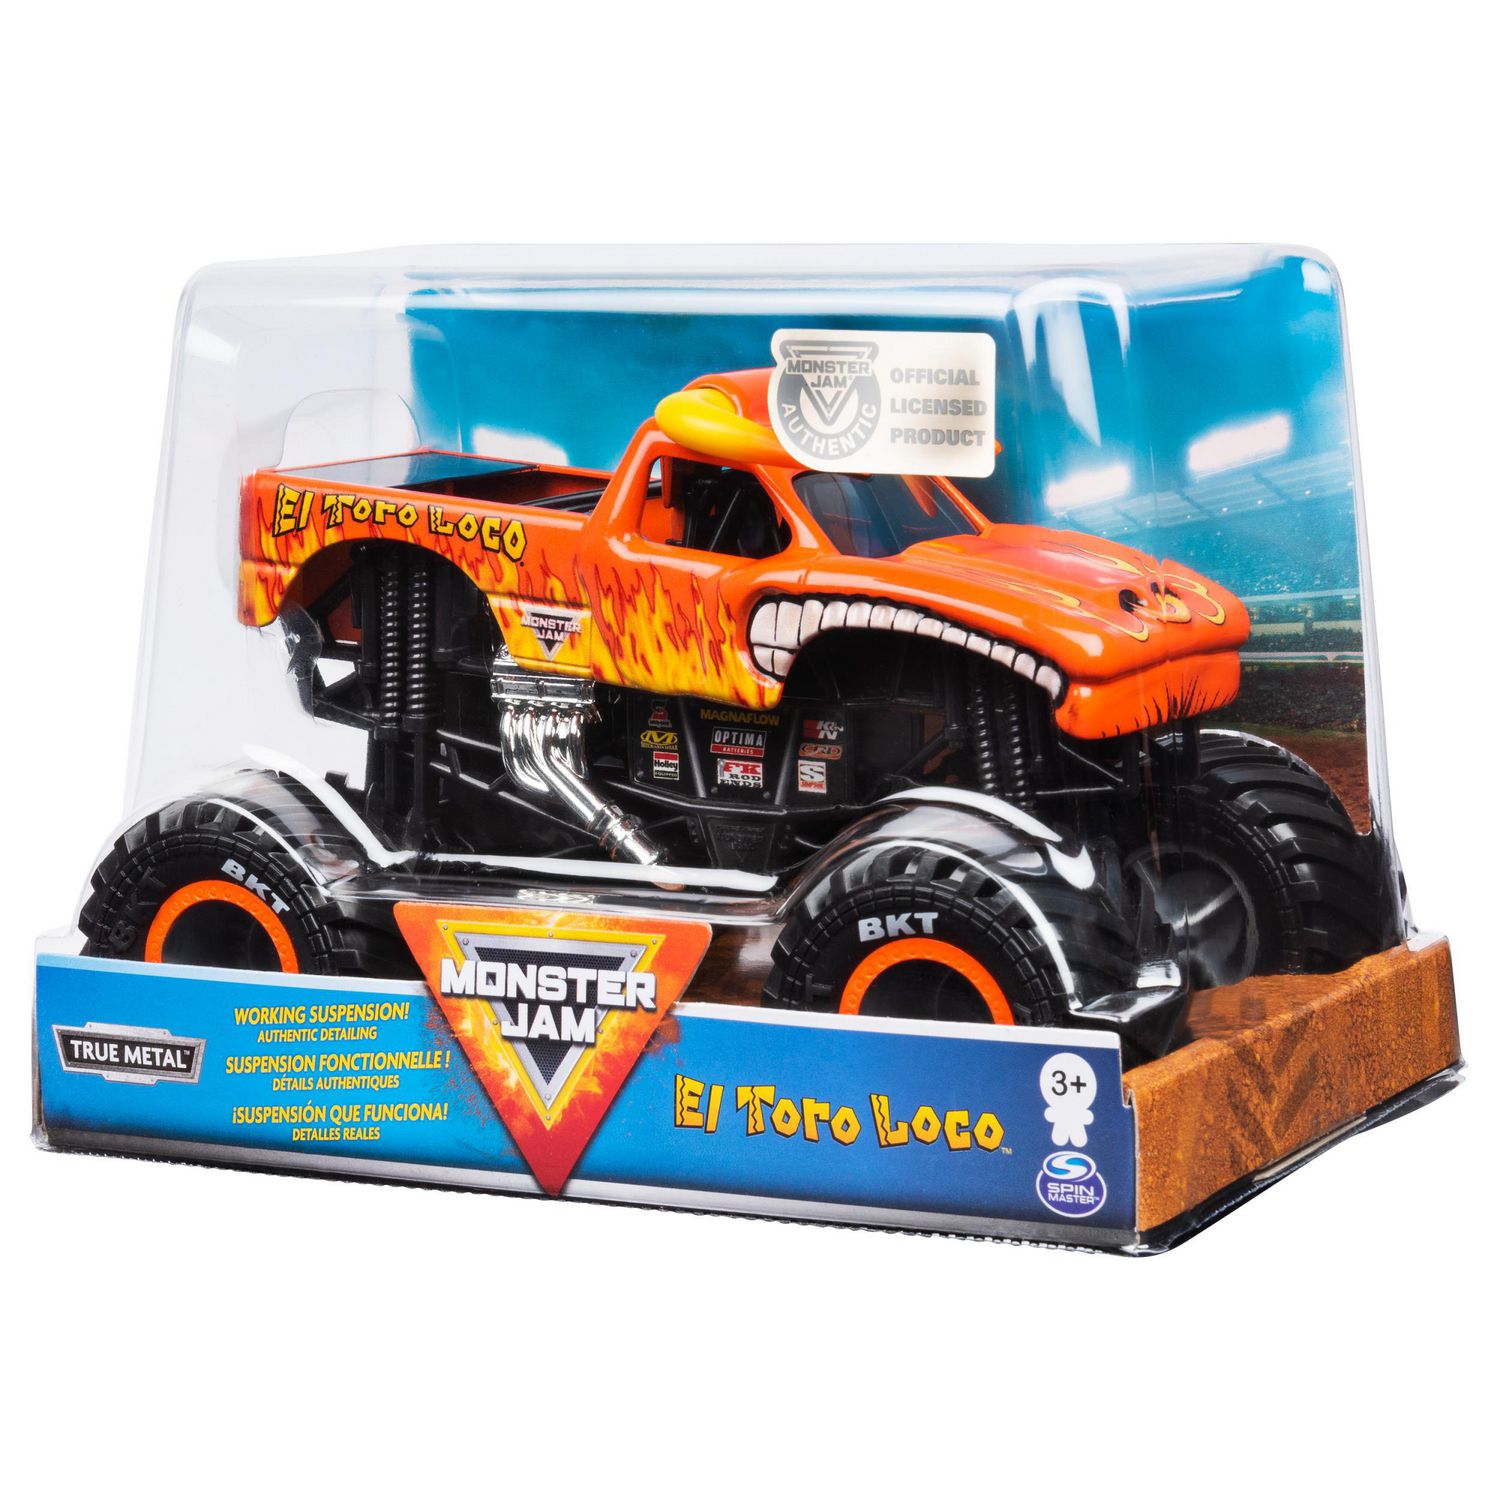 Monster Truck Toy Car, véhicule tout-terrain Jouet Voiture Monster Truck  Cadeau, mini jouets de pneus en caoutchouc Tirer des voitures pour les  enfants garçons